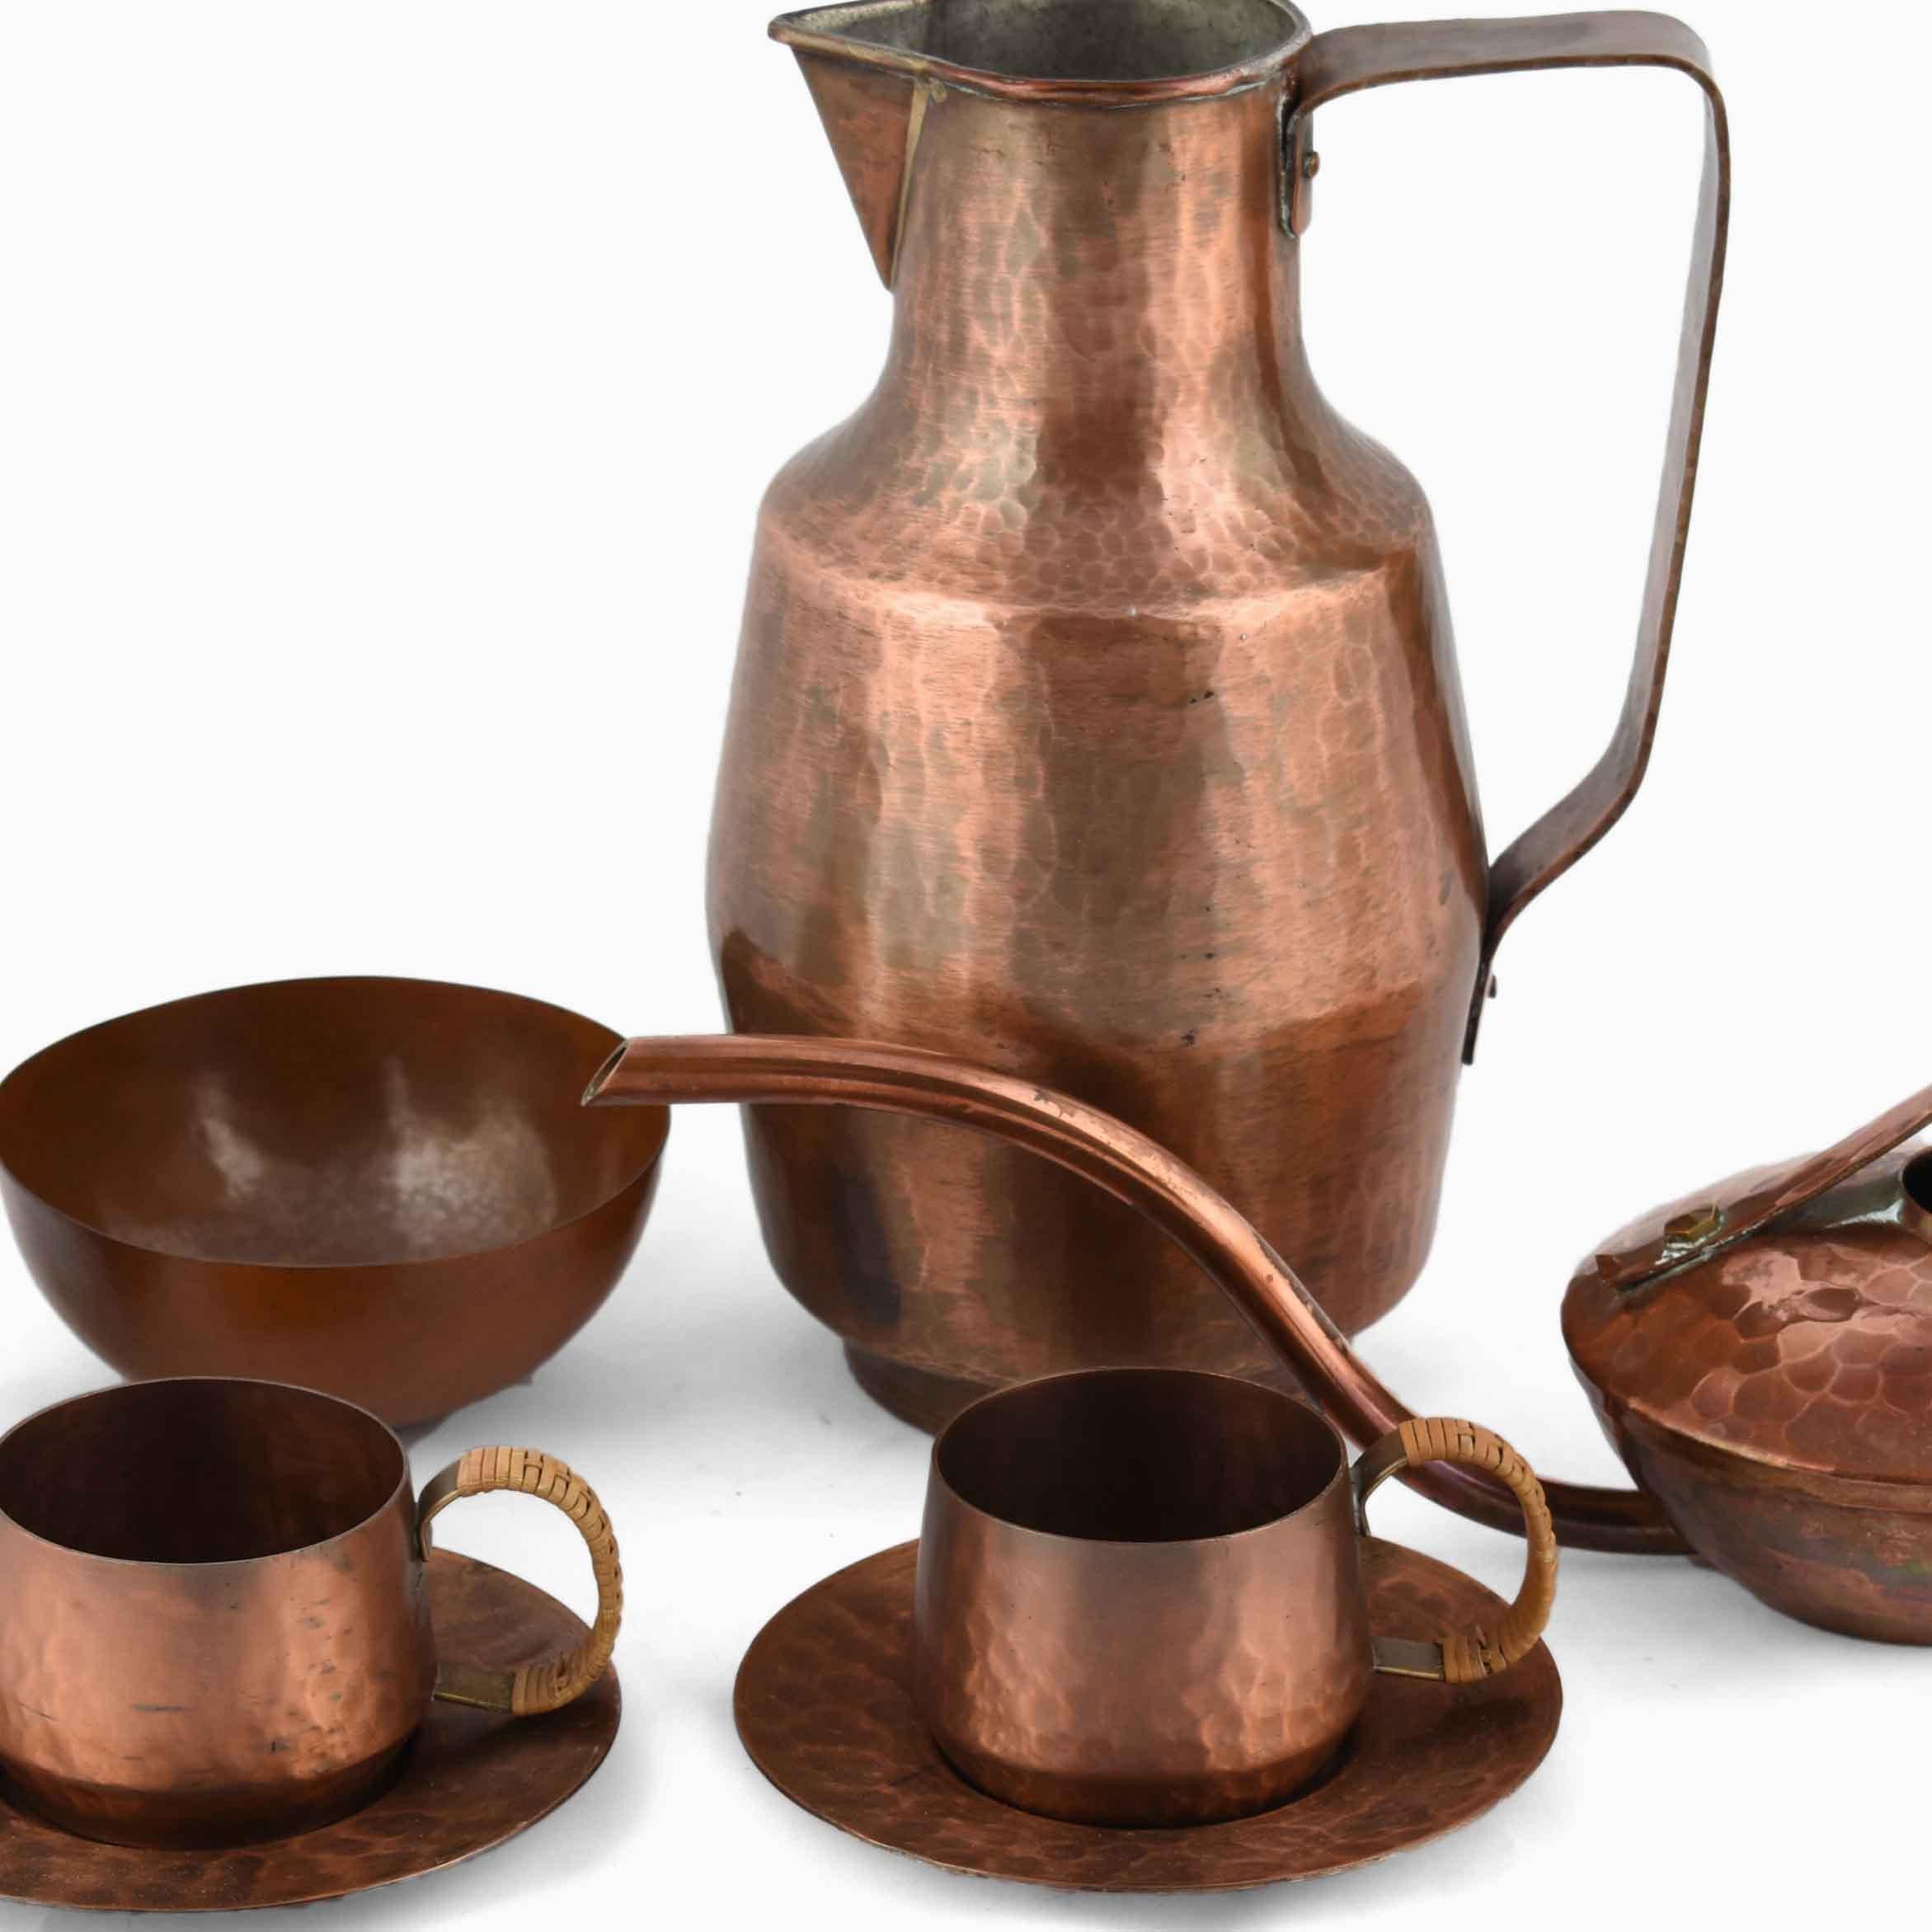 Mixed Copper Lot ist eine originelle Gruppe von Objekten aus der zweiten Hälfte des 20. Jahrhunderts.

Die Gruppe umfasst 6 Objekte: eine Art Deco-Tasse, einen Donutkrug (realisiert von Eugen Zint), eine Kanne (realisiert von der VED Kunstschmiede